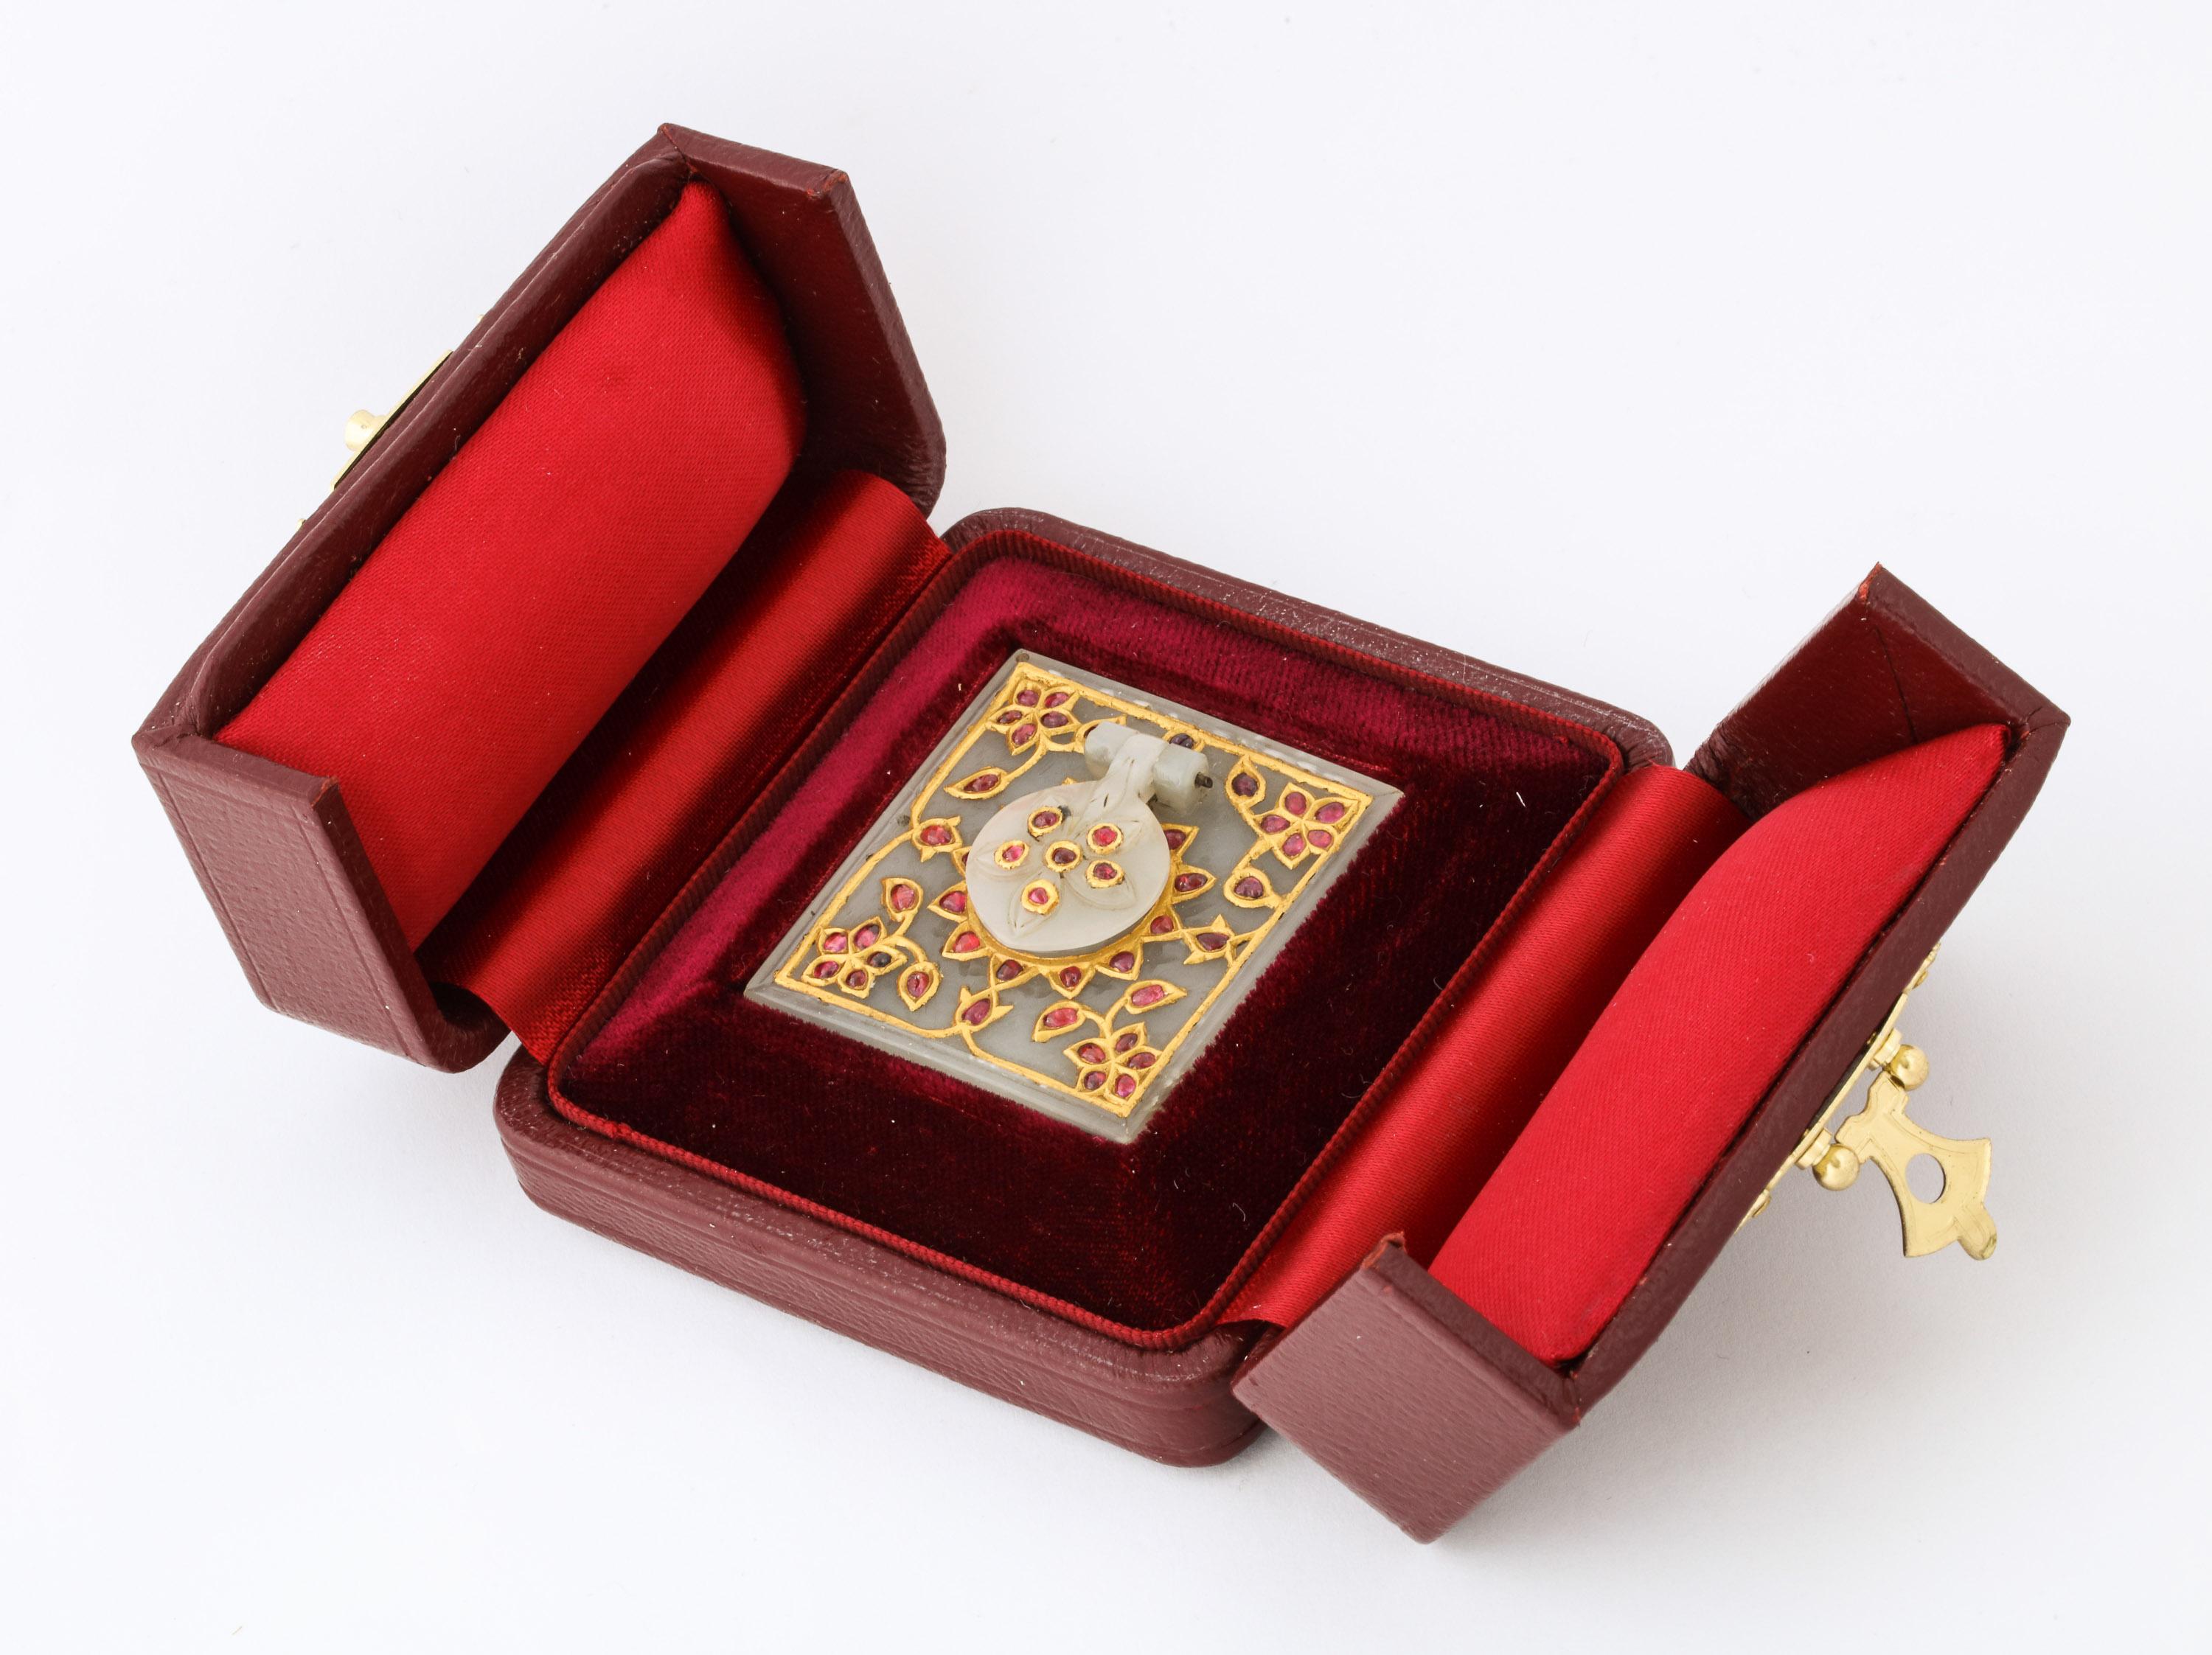 Sammlung Al Thani, quadratisches indisches Mughal-Tintenfass aus weißer Jade, um 1800

Erworben aus der Sammlung Al Thani, Christies New York, Sale 17464, Maharajas & Mughal Magnificence, 19. Juni 2019.

Die Jade ist geschnitzt und mit Rubinen